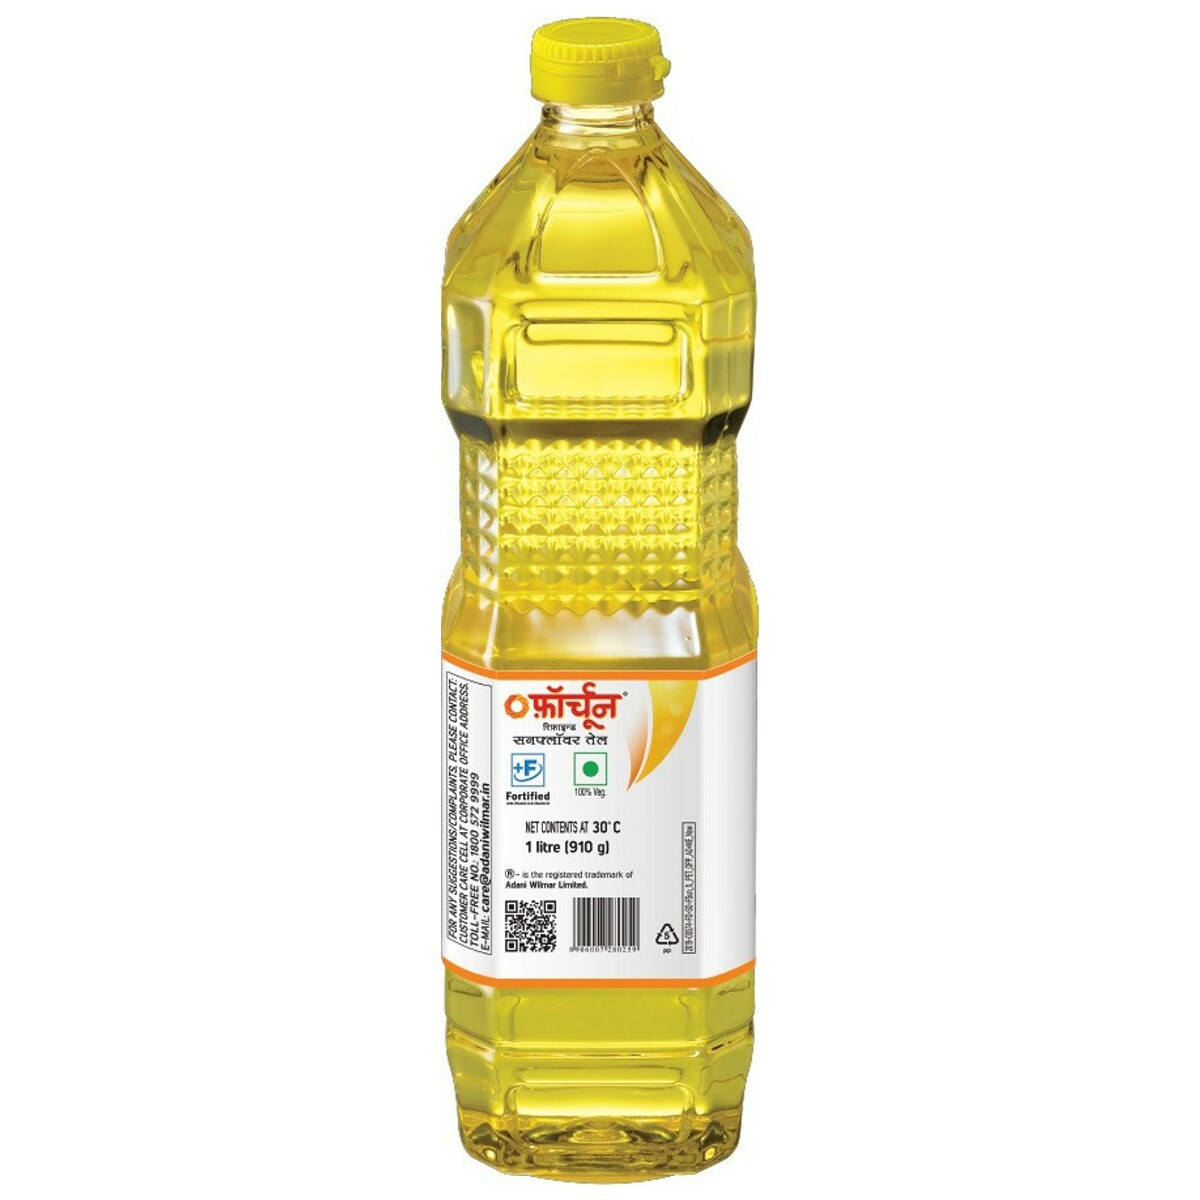 Fortune Sun lite Refined Sunflower Oil Bottle 1 Liter